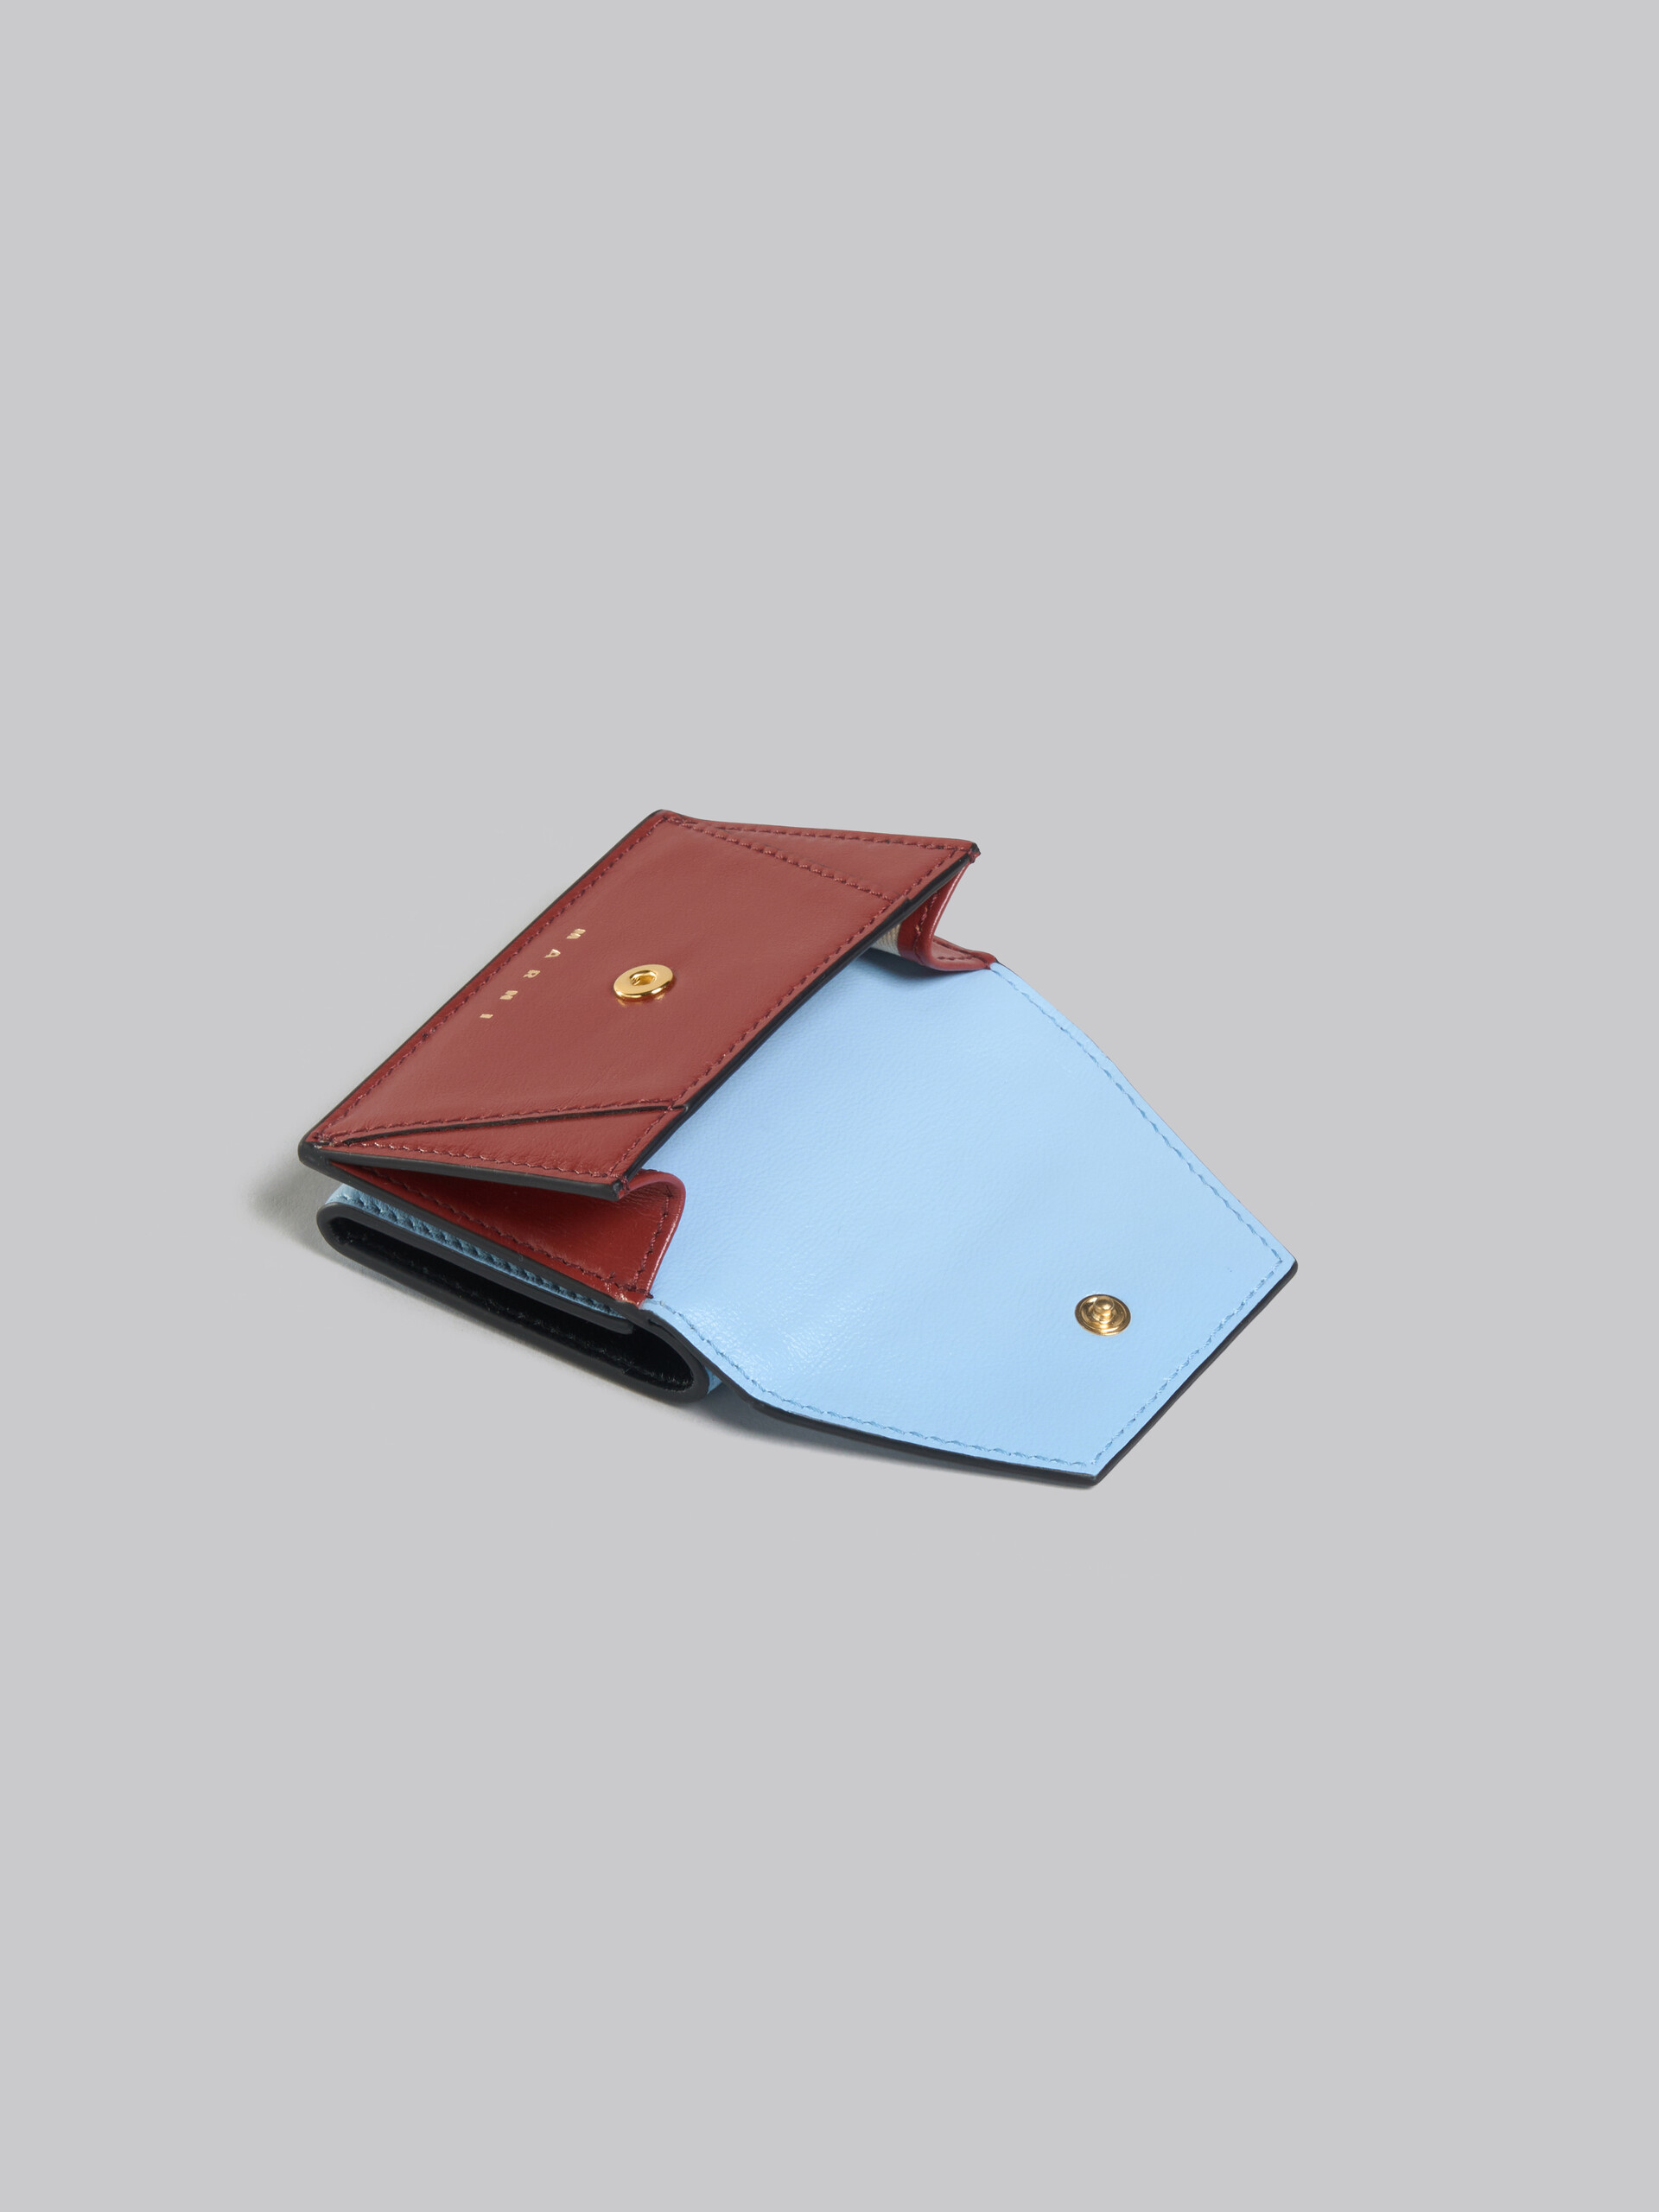 グレー、ブラックレザー製三つ折りウォレット - 財布 - Image 5